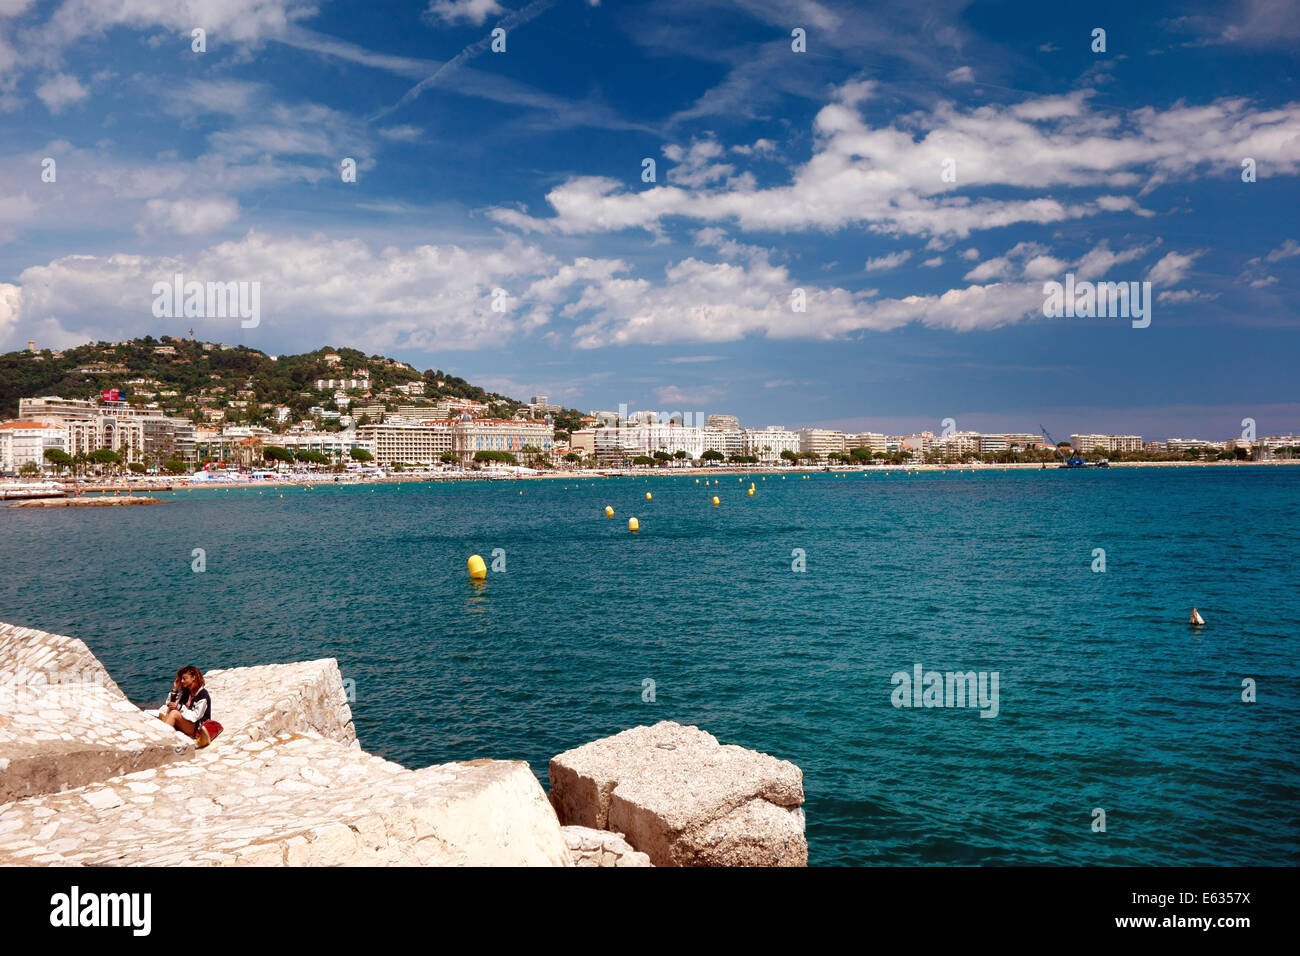 Chica sentada sobre las rocas con paseo marítimo de Cannes en segundo plano. Foto de stock